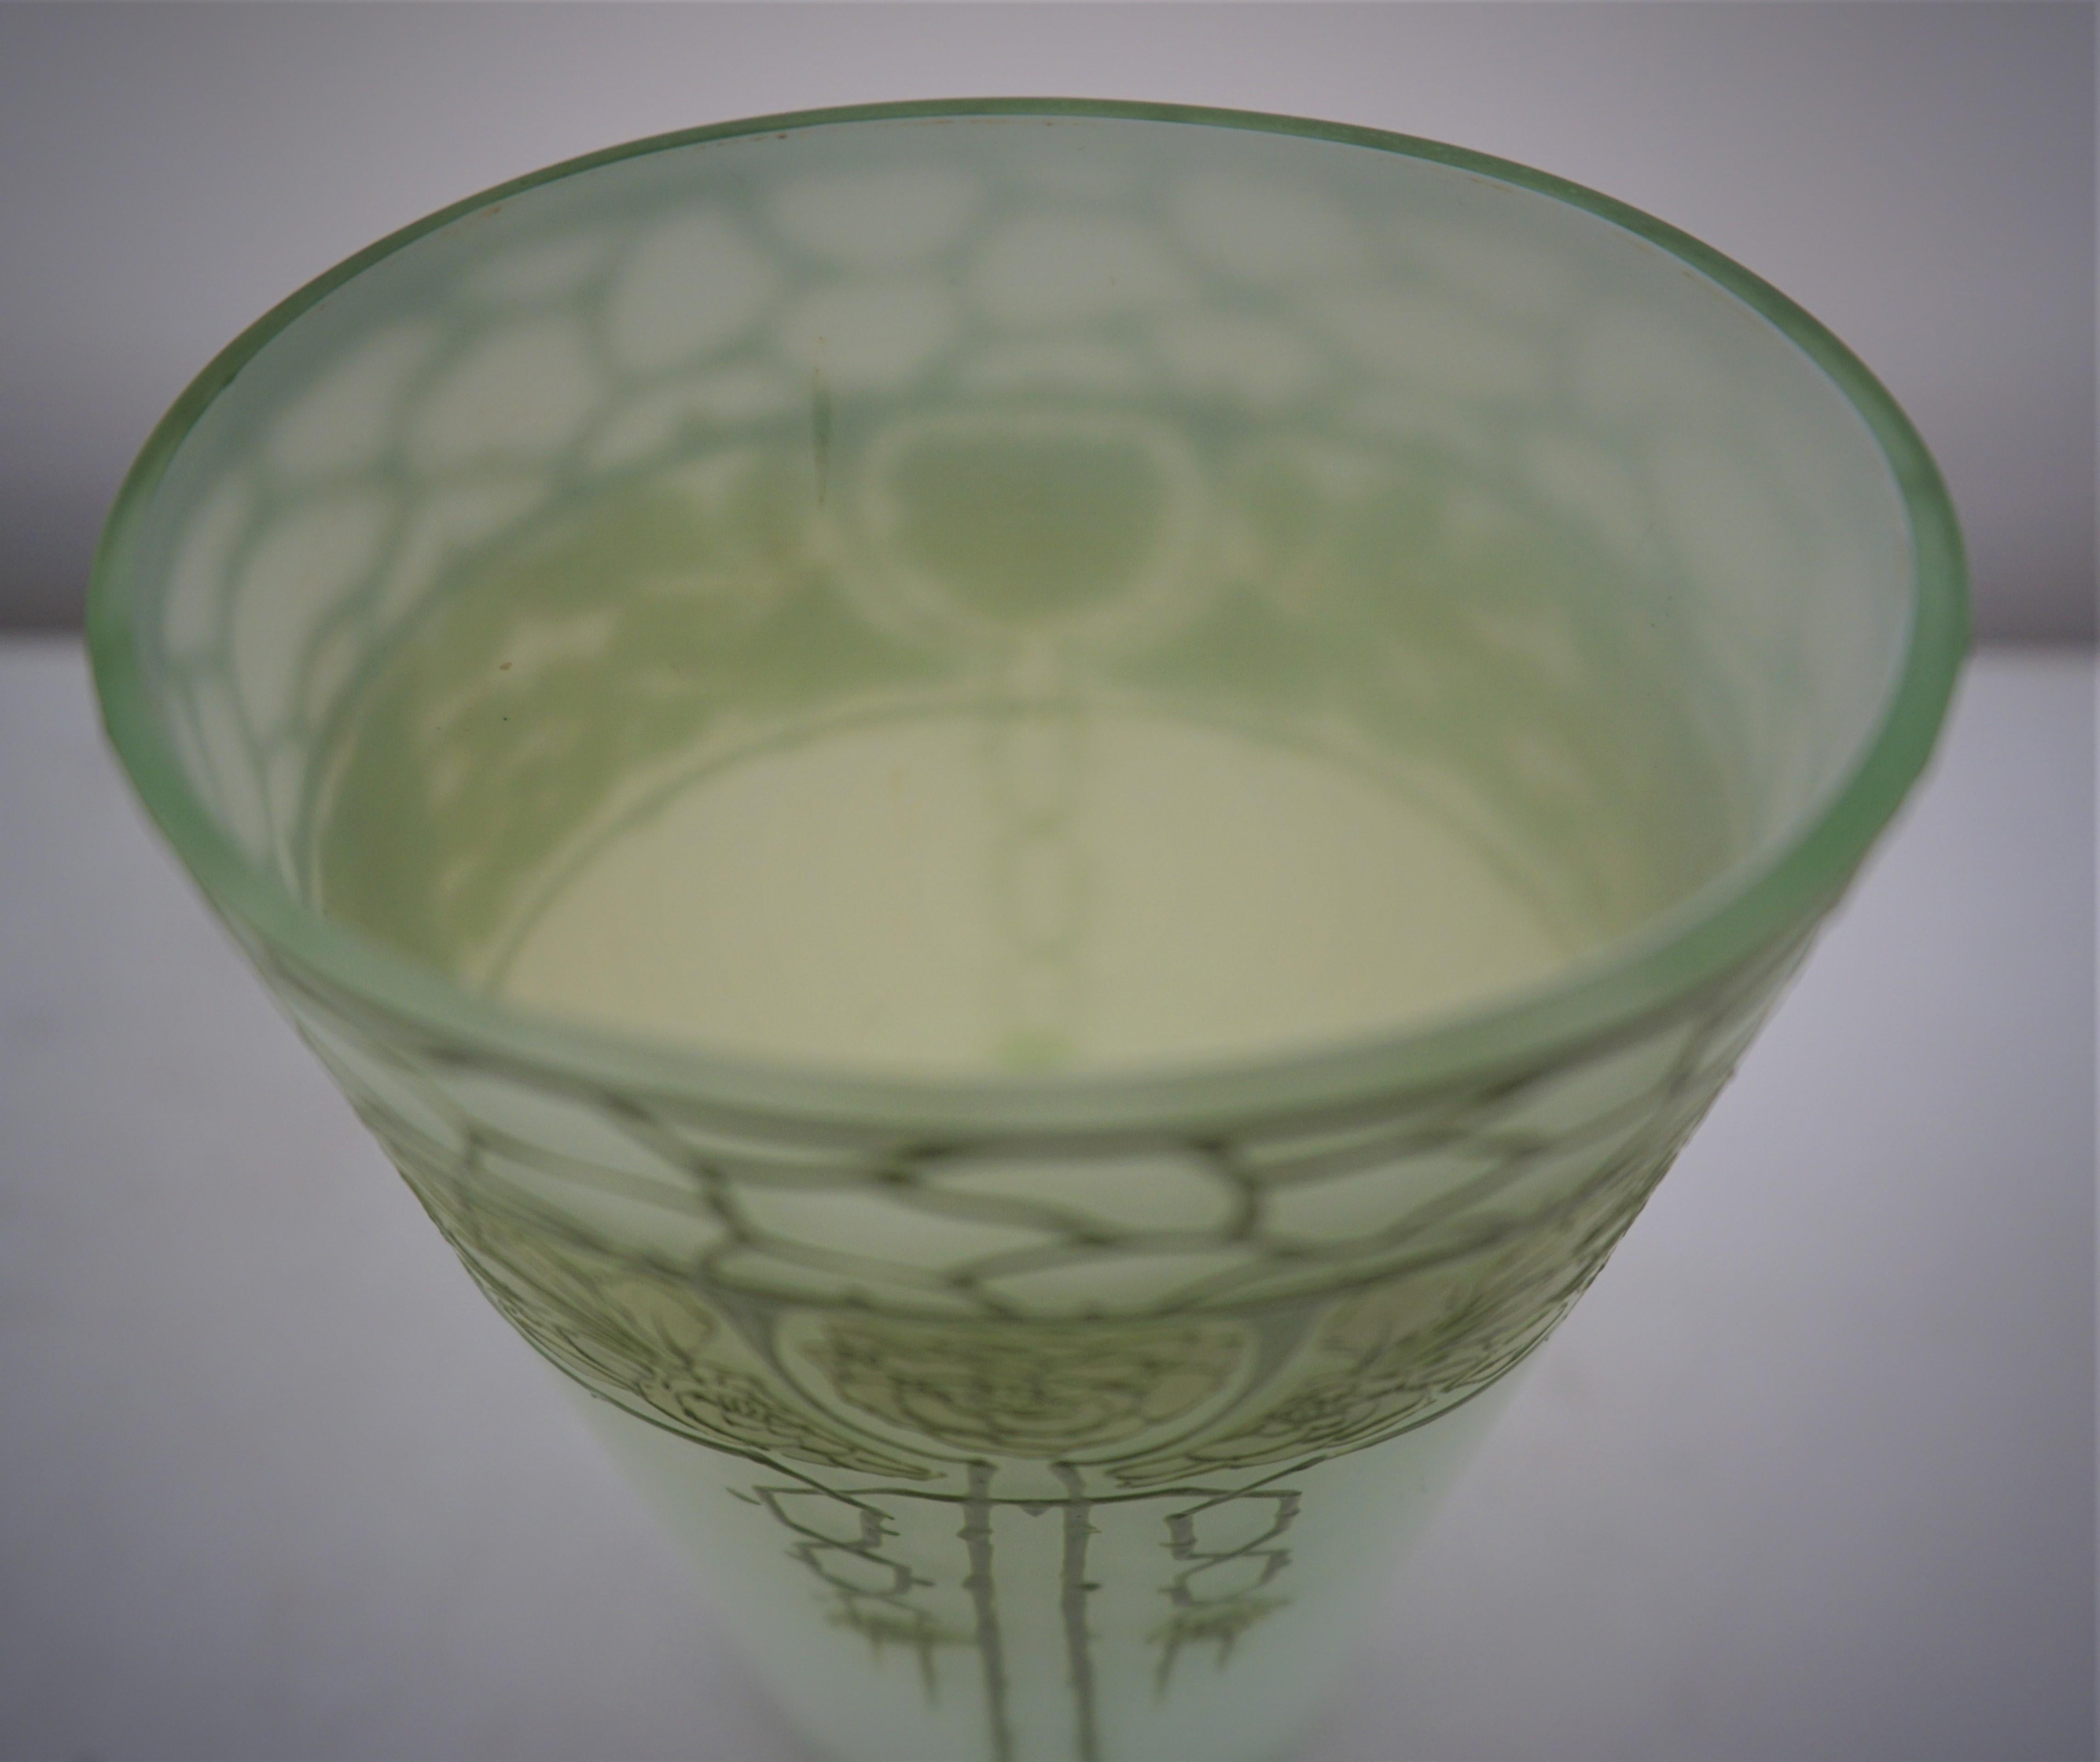  Art Nouveau  Jugendstil cameo glass vase 1